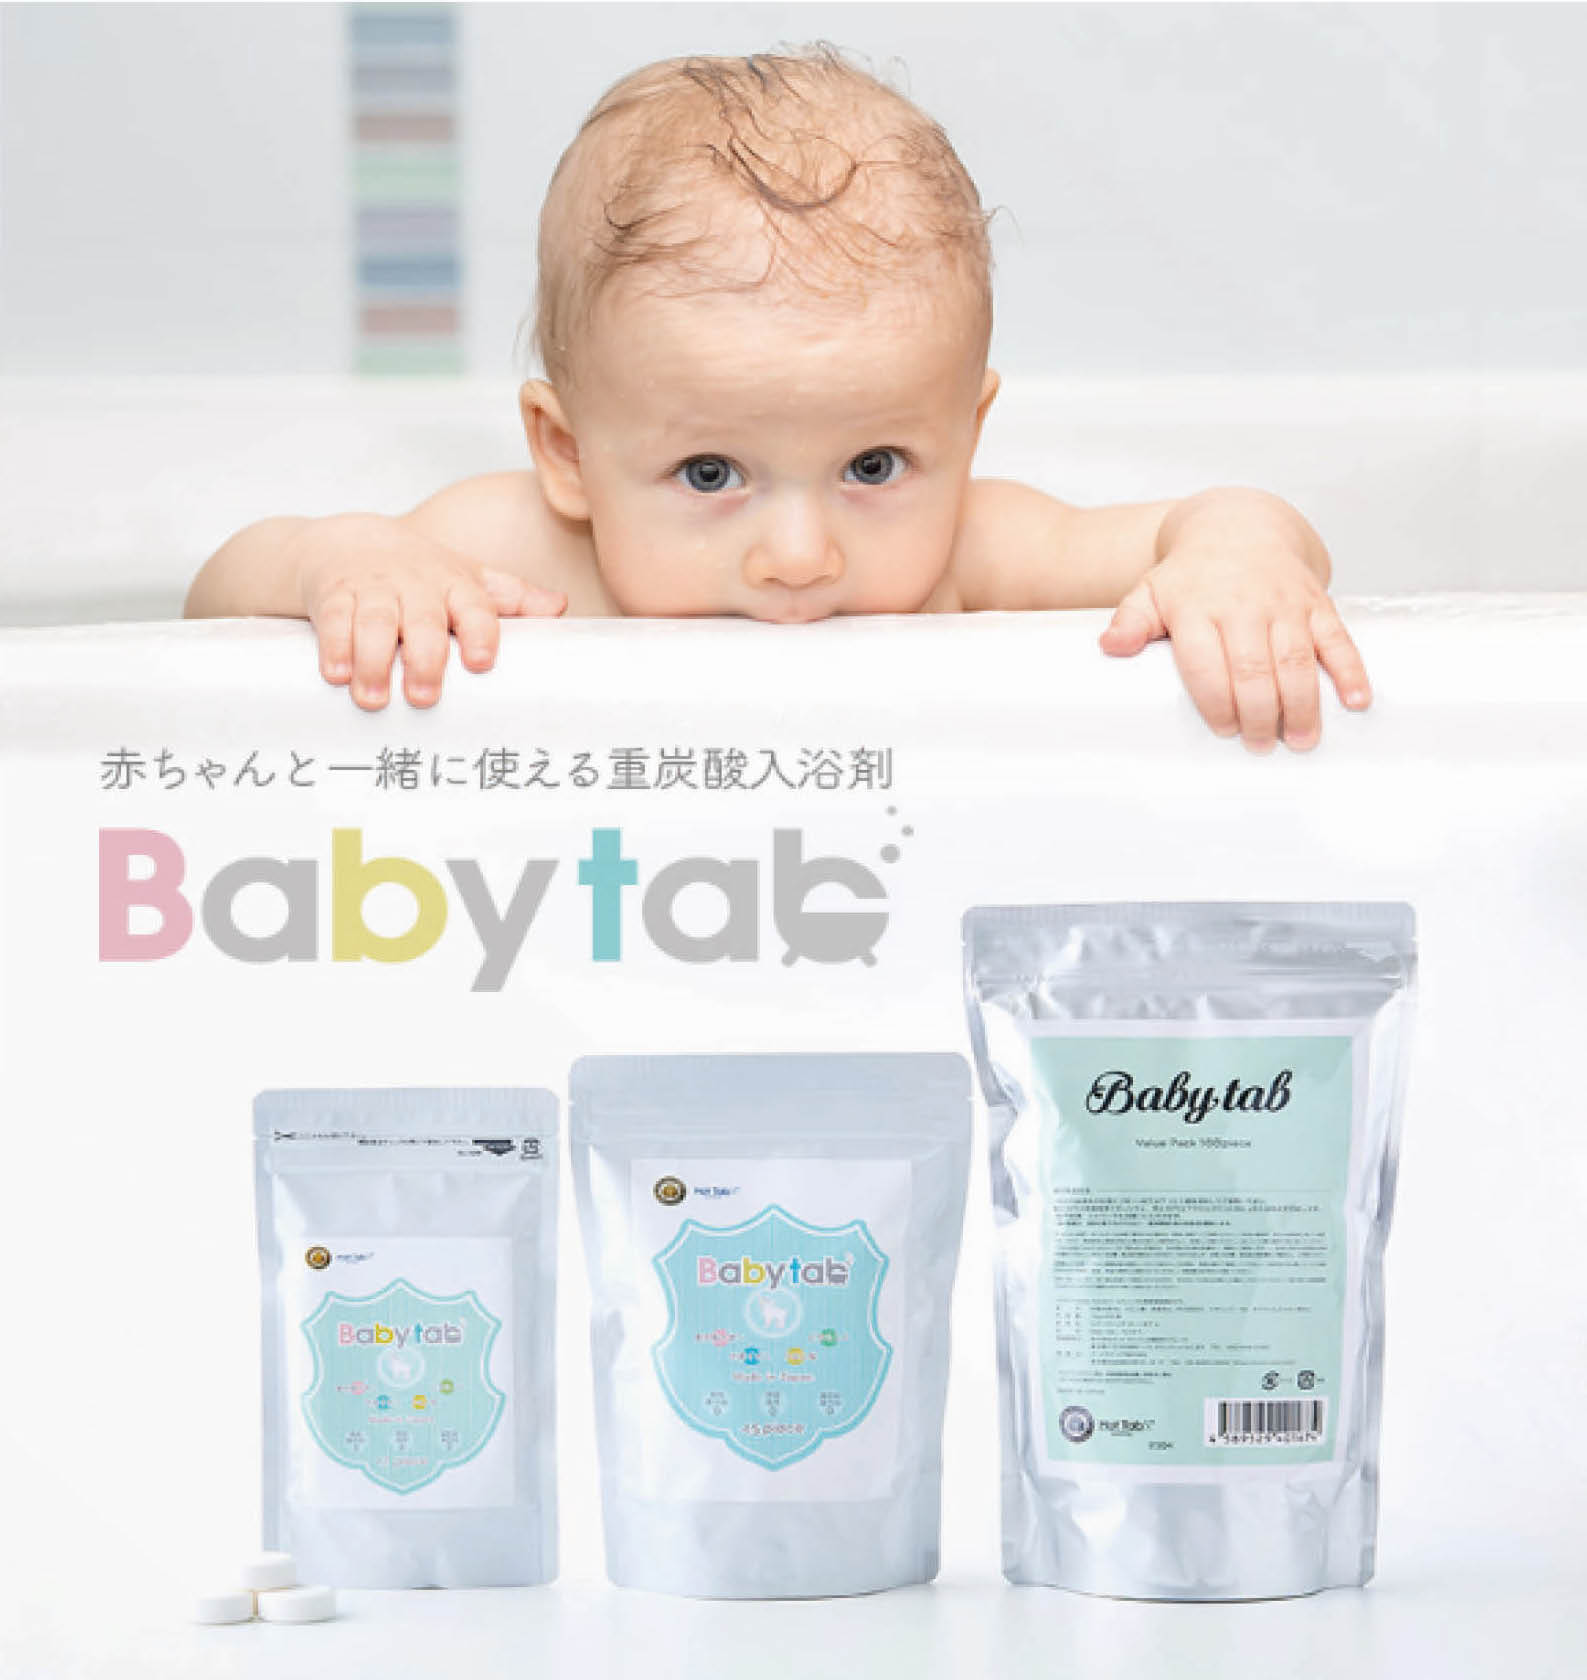 赤ちゃん から一緒に使える無添加の重炭酸入浴剤 Babytab ベビタブ が 第13回ペアレンティングアワード2020 のモノ部門を受賞 Bestunning株式会社のプレスリリース